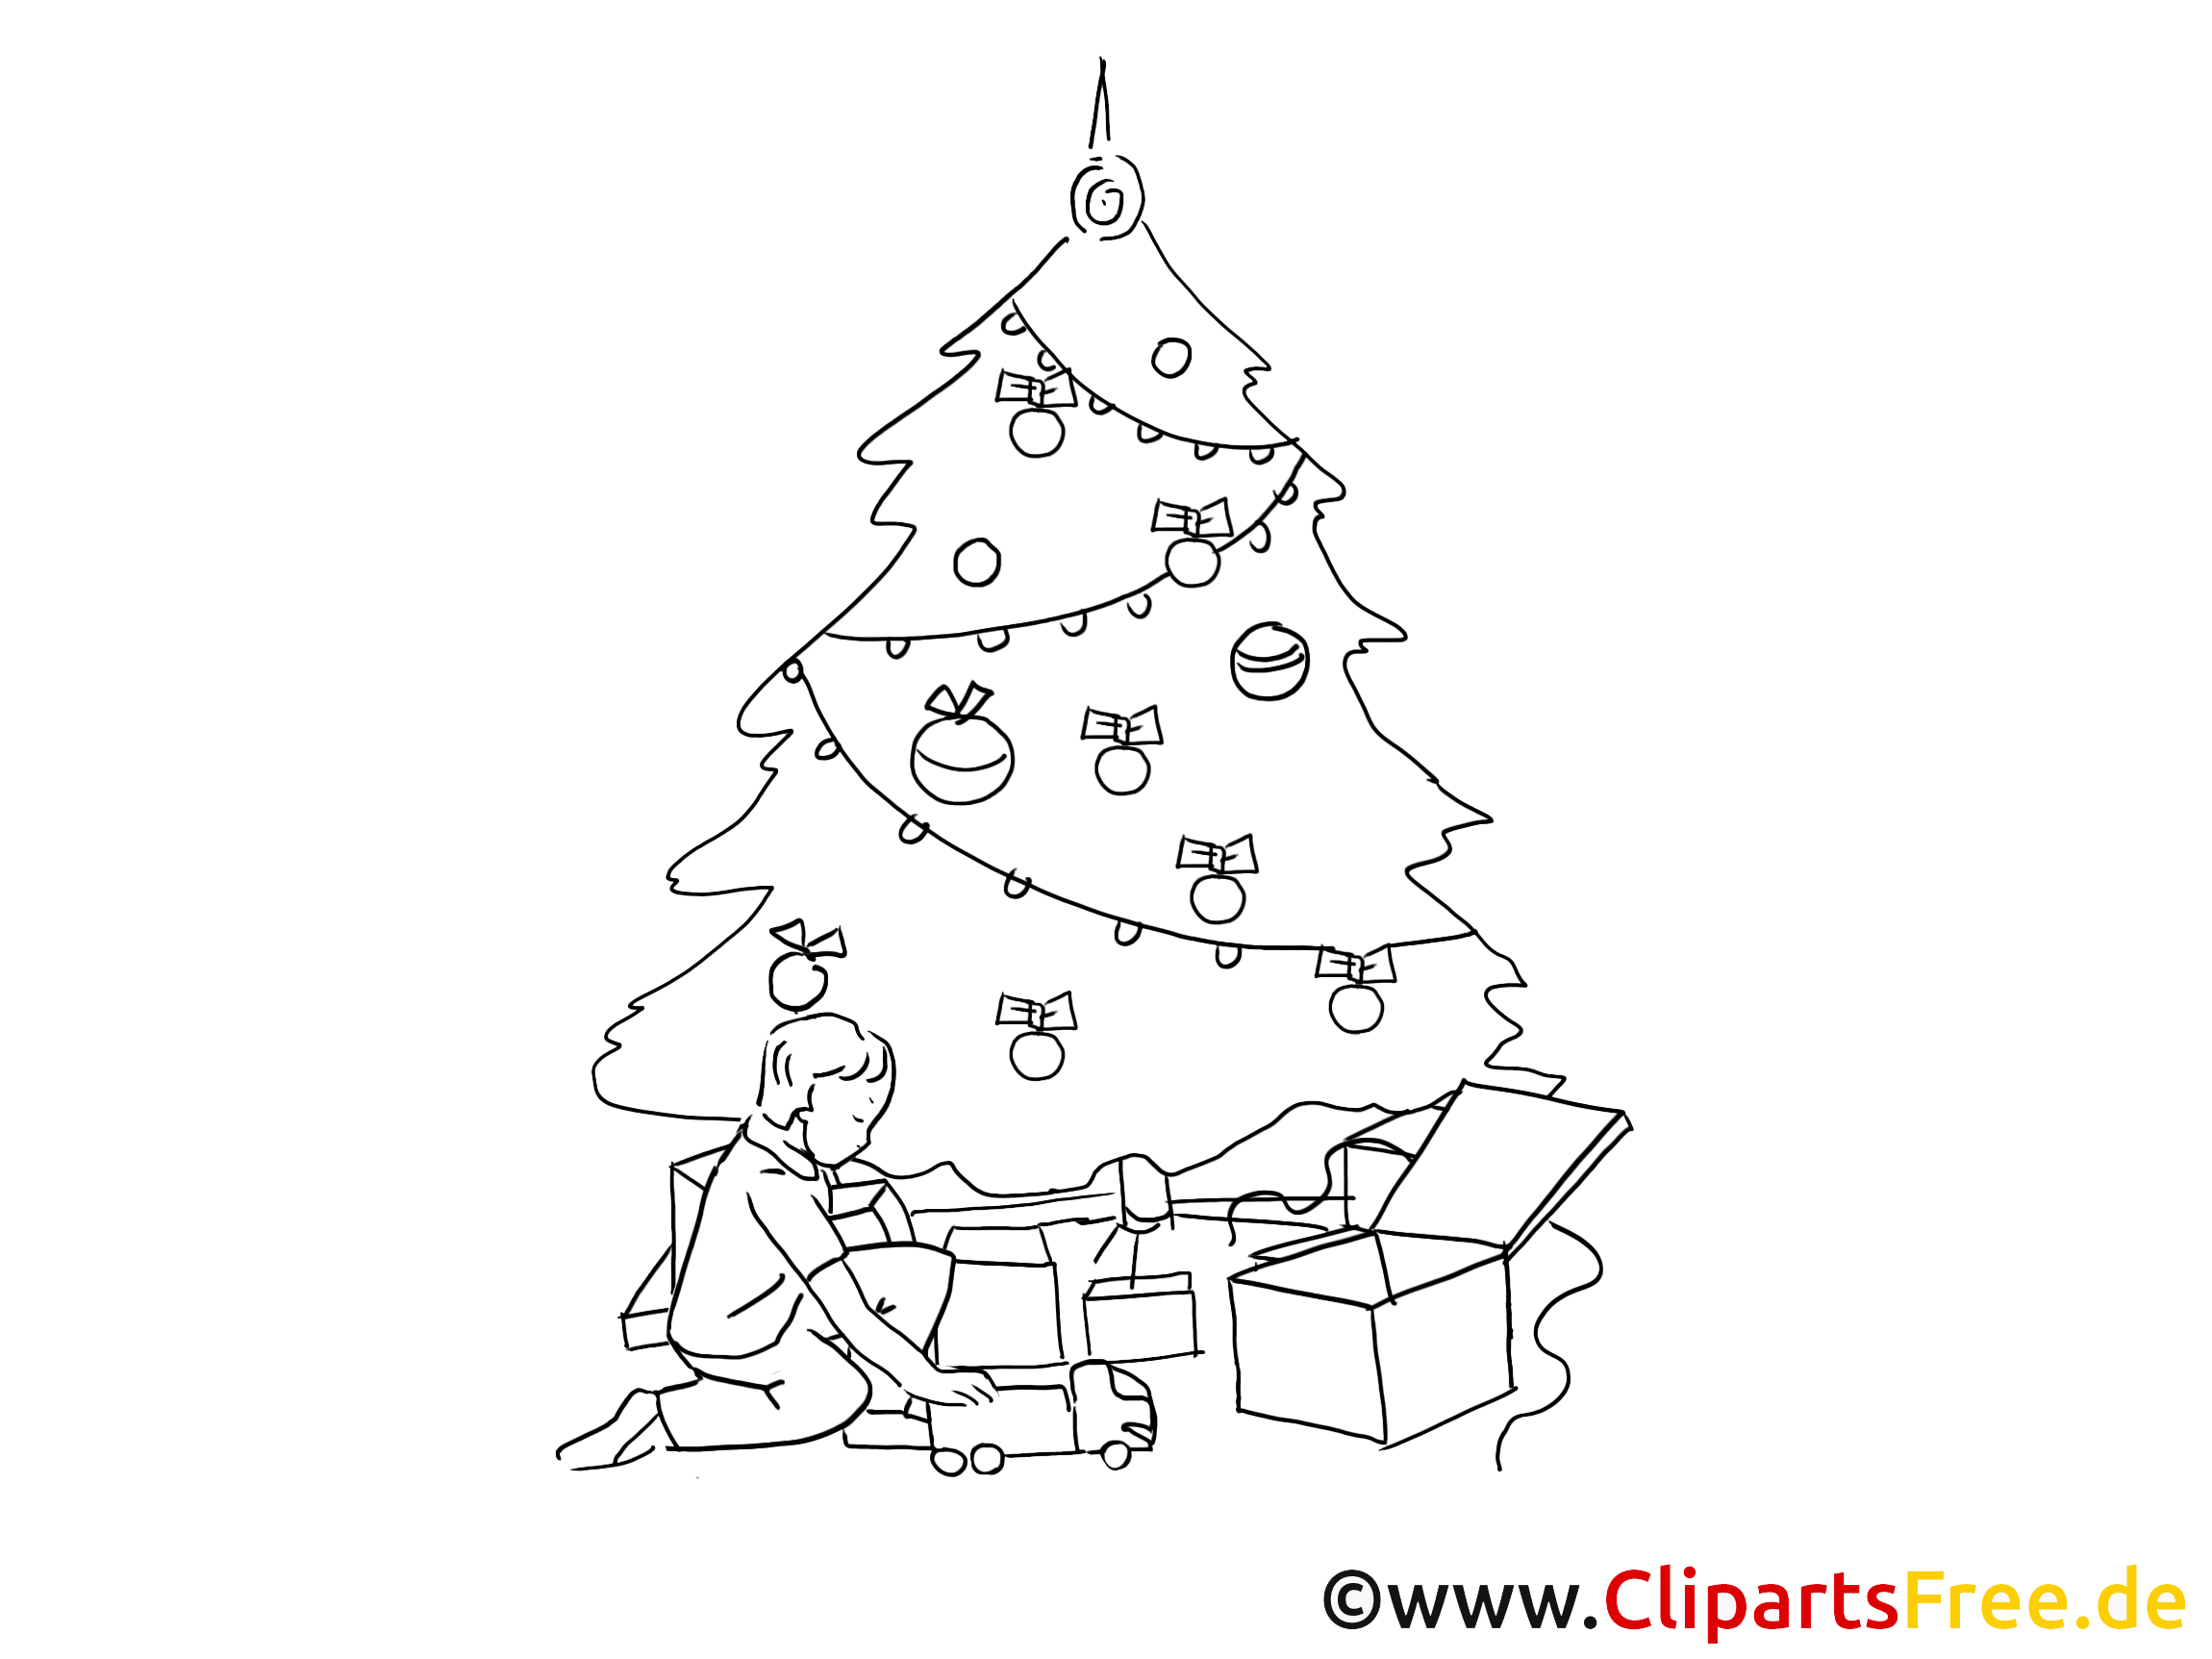 cliparts weihnachten - photo #29